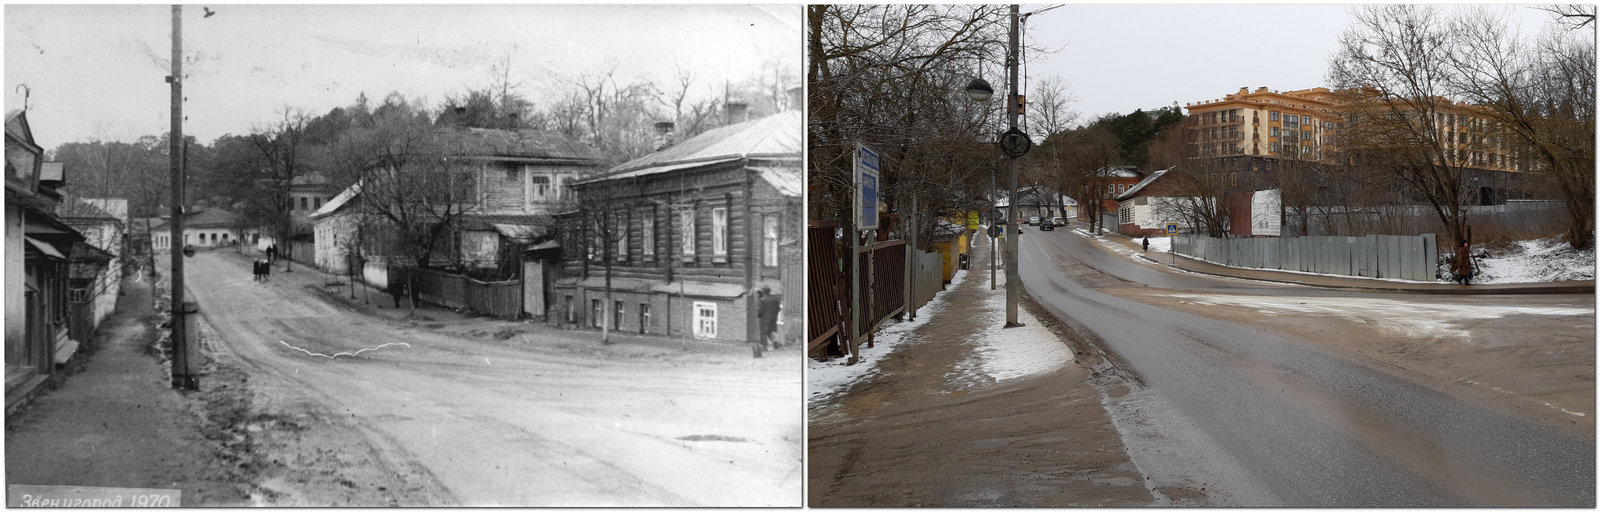 Улица Фрунзе (бывш Саввинская) 1970 год (Автор фото Валентин Бабакин) и 26 января 2020